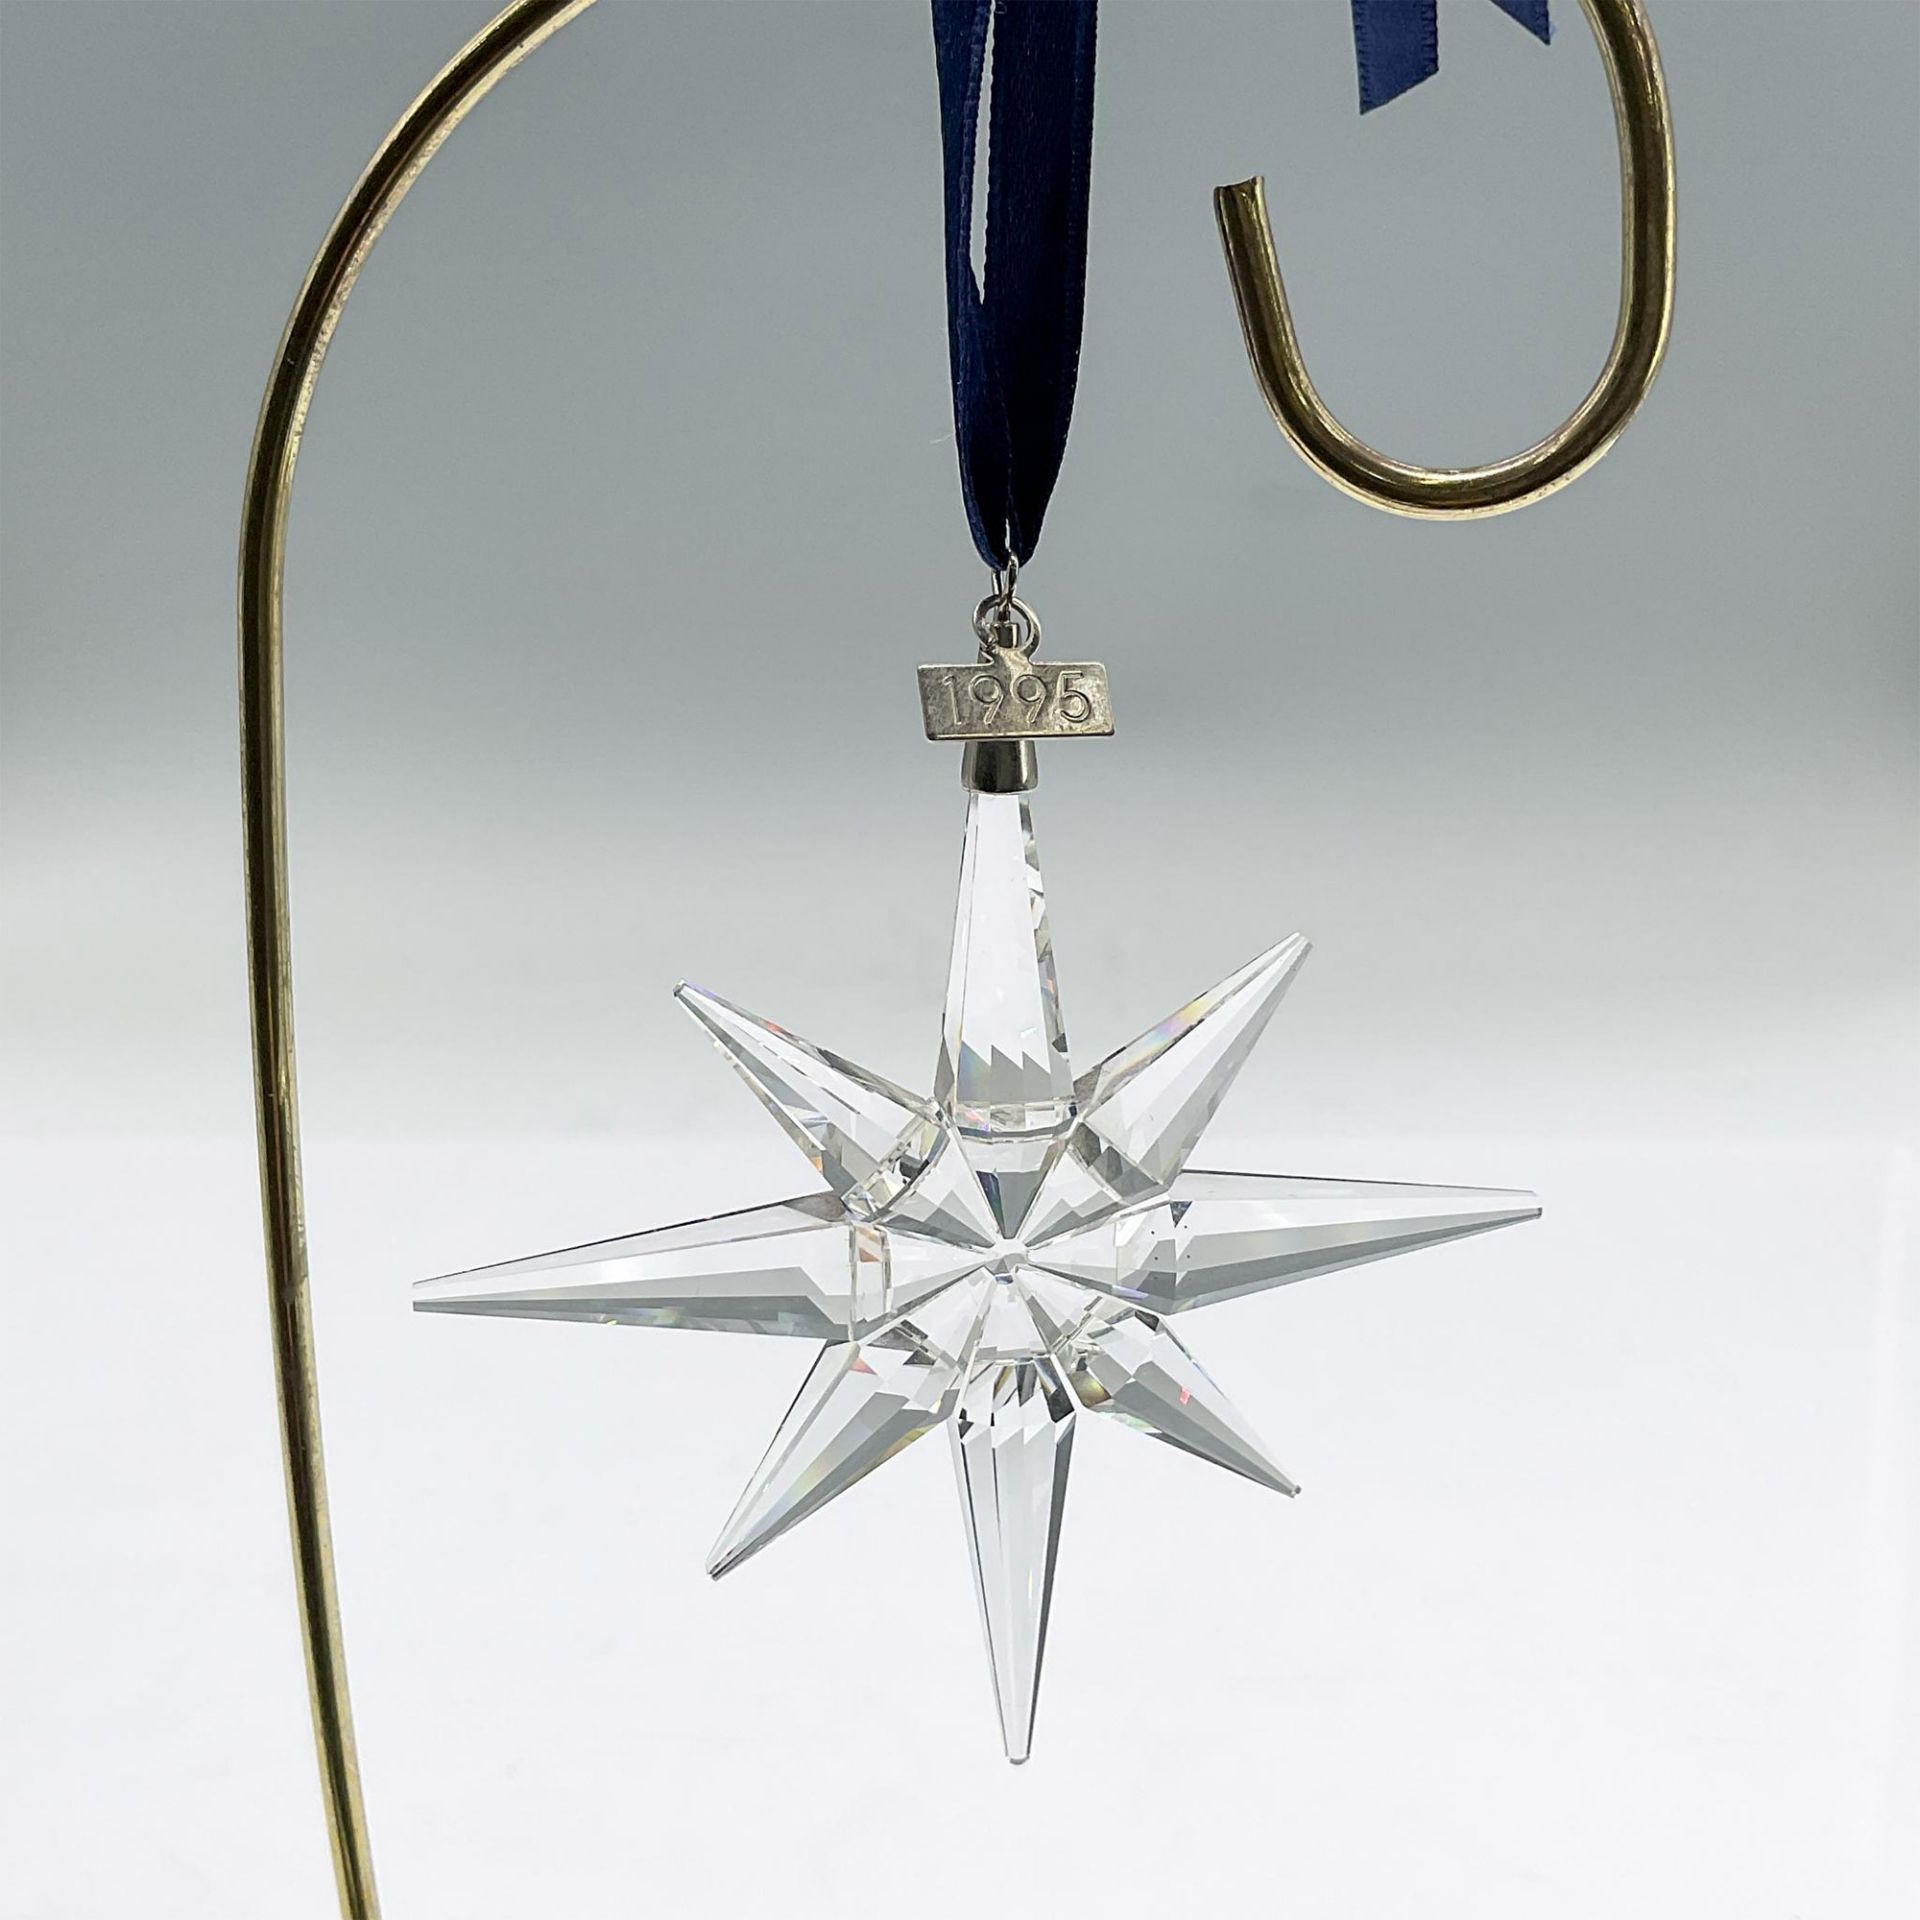 Swarovski Crystal Christmas Ornament 1995